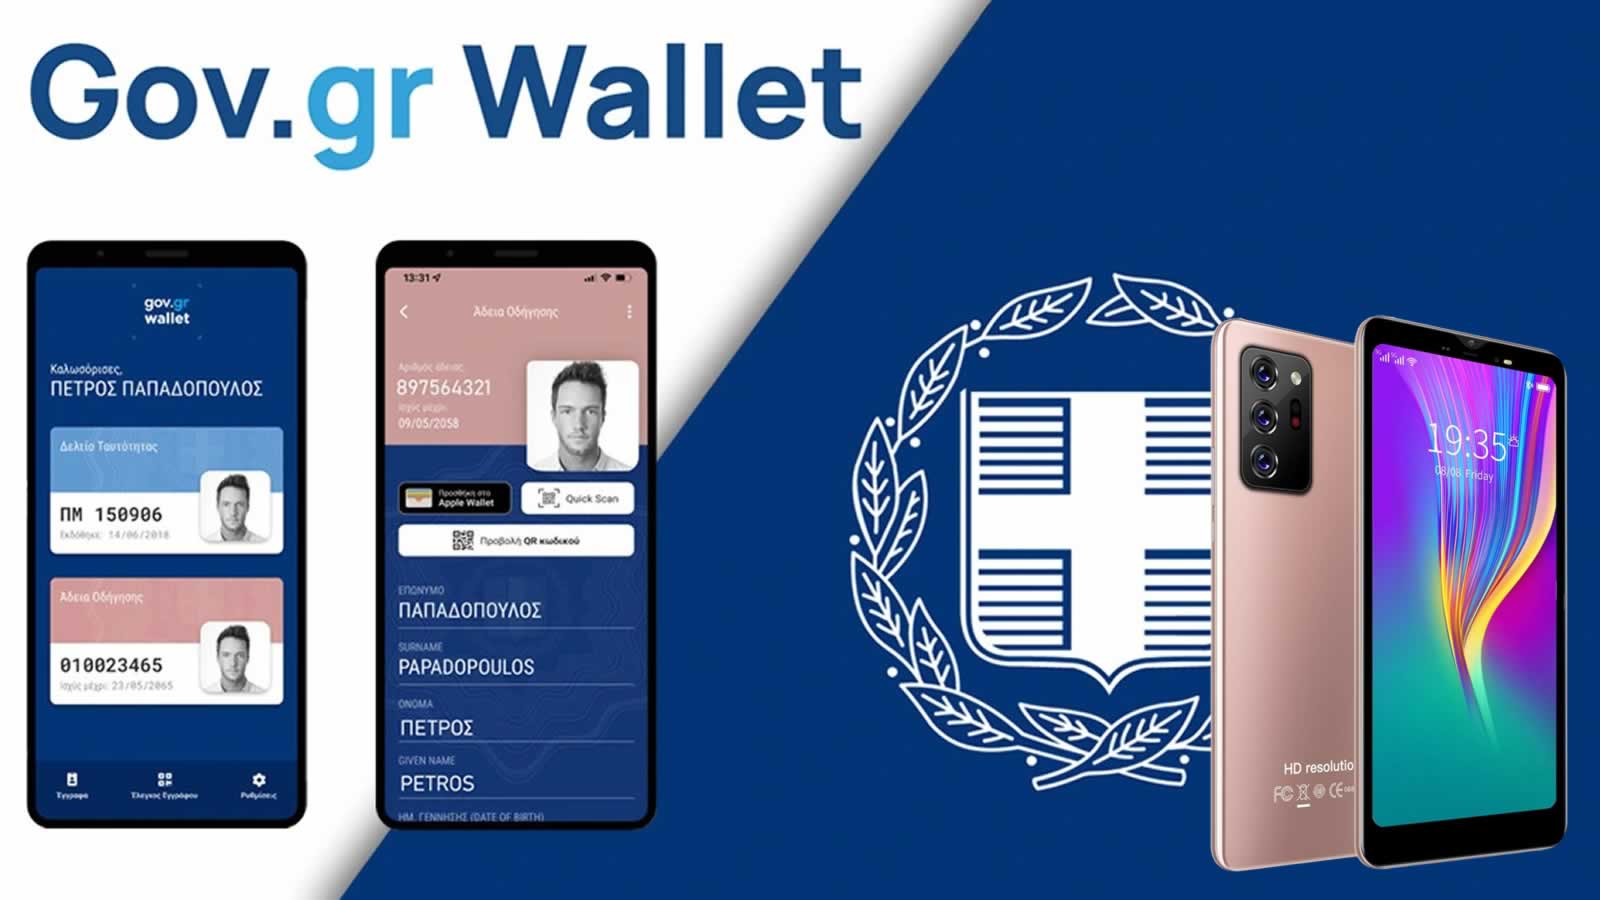 gov.gr wallet